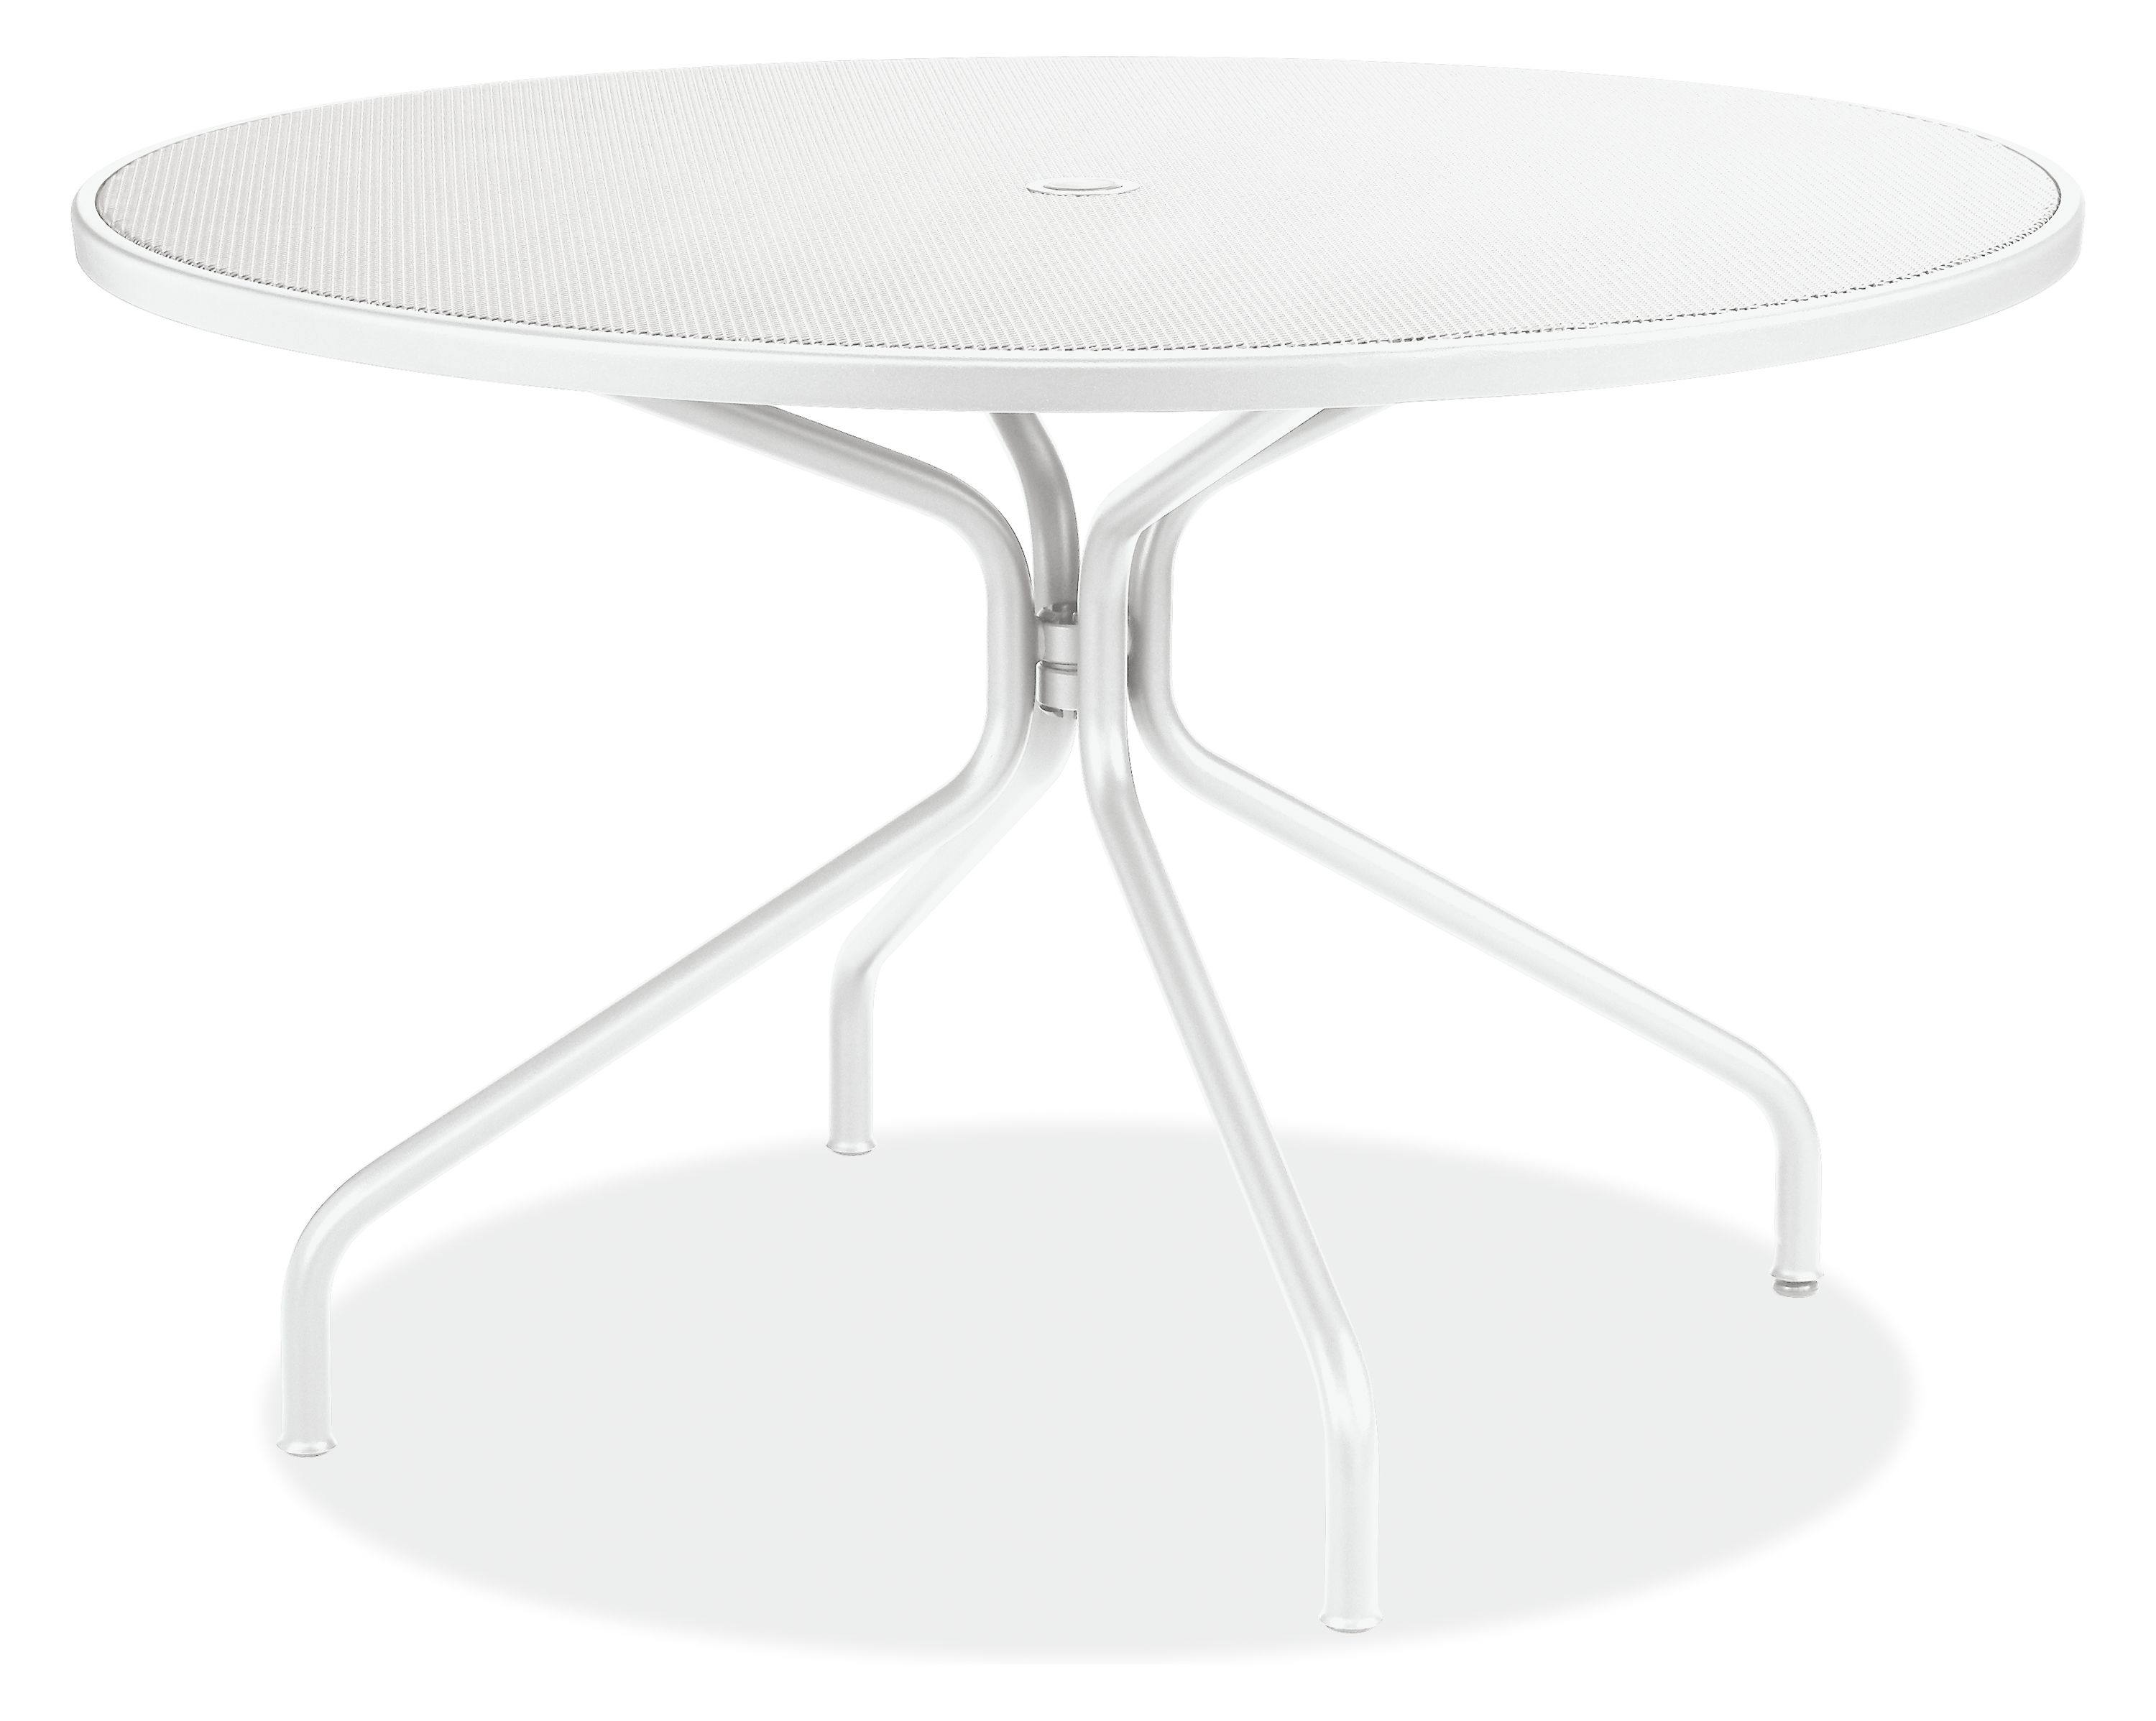 Kona Round Tables Modern Outdoor, Patio Table White Round